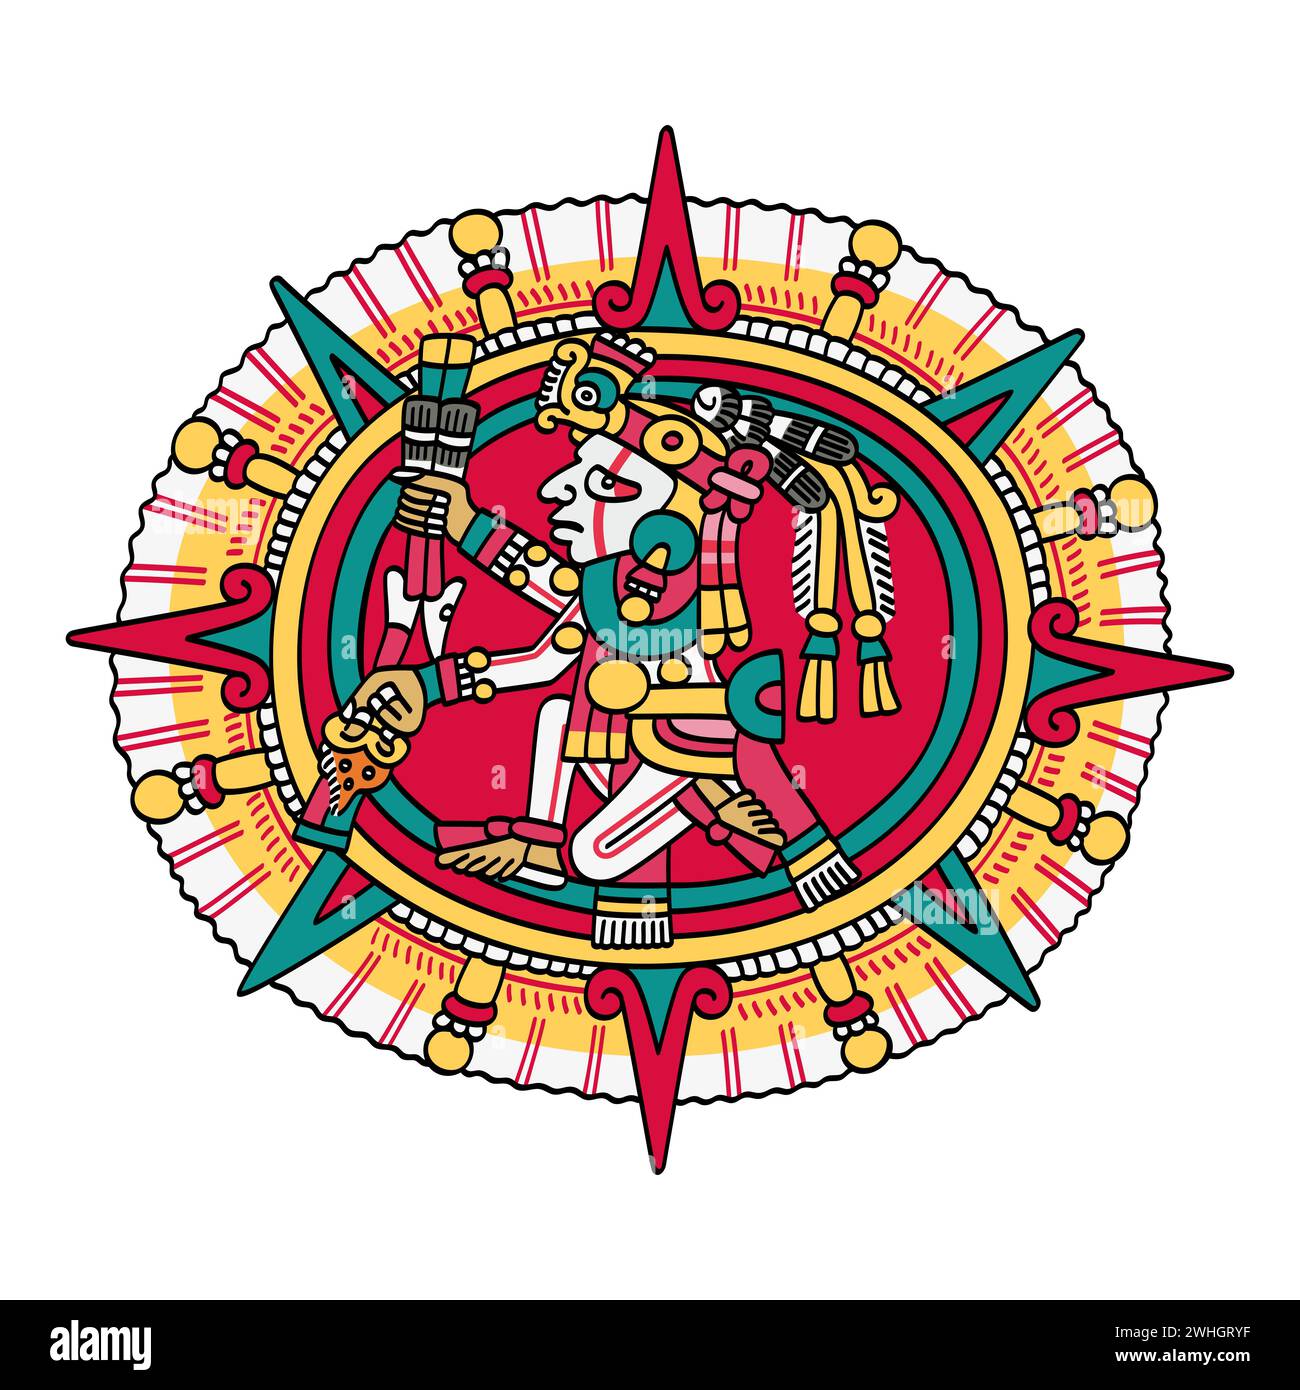 Tonatiuh, aztekischer Sonnengott, bekannt als Nahui Ollin, die Fünfte Sonne, dargestellt in der Mitte einer Sonnenscheibe. Sollte die Menschheit scheitern, bringt er Armageddon. Stockfoto